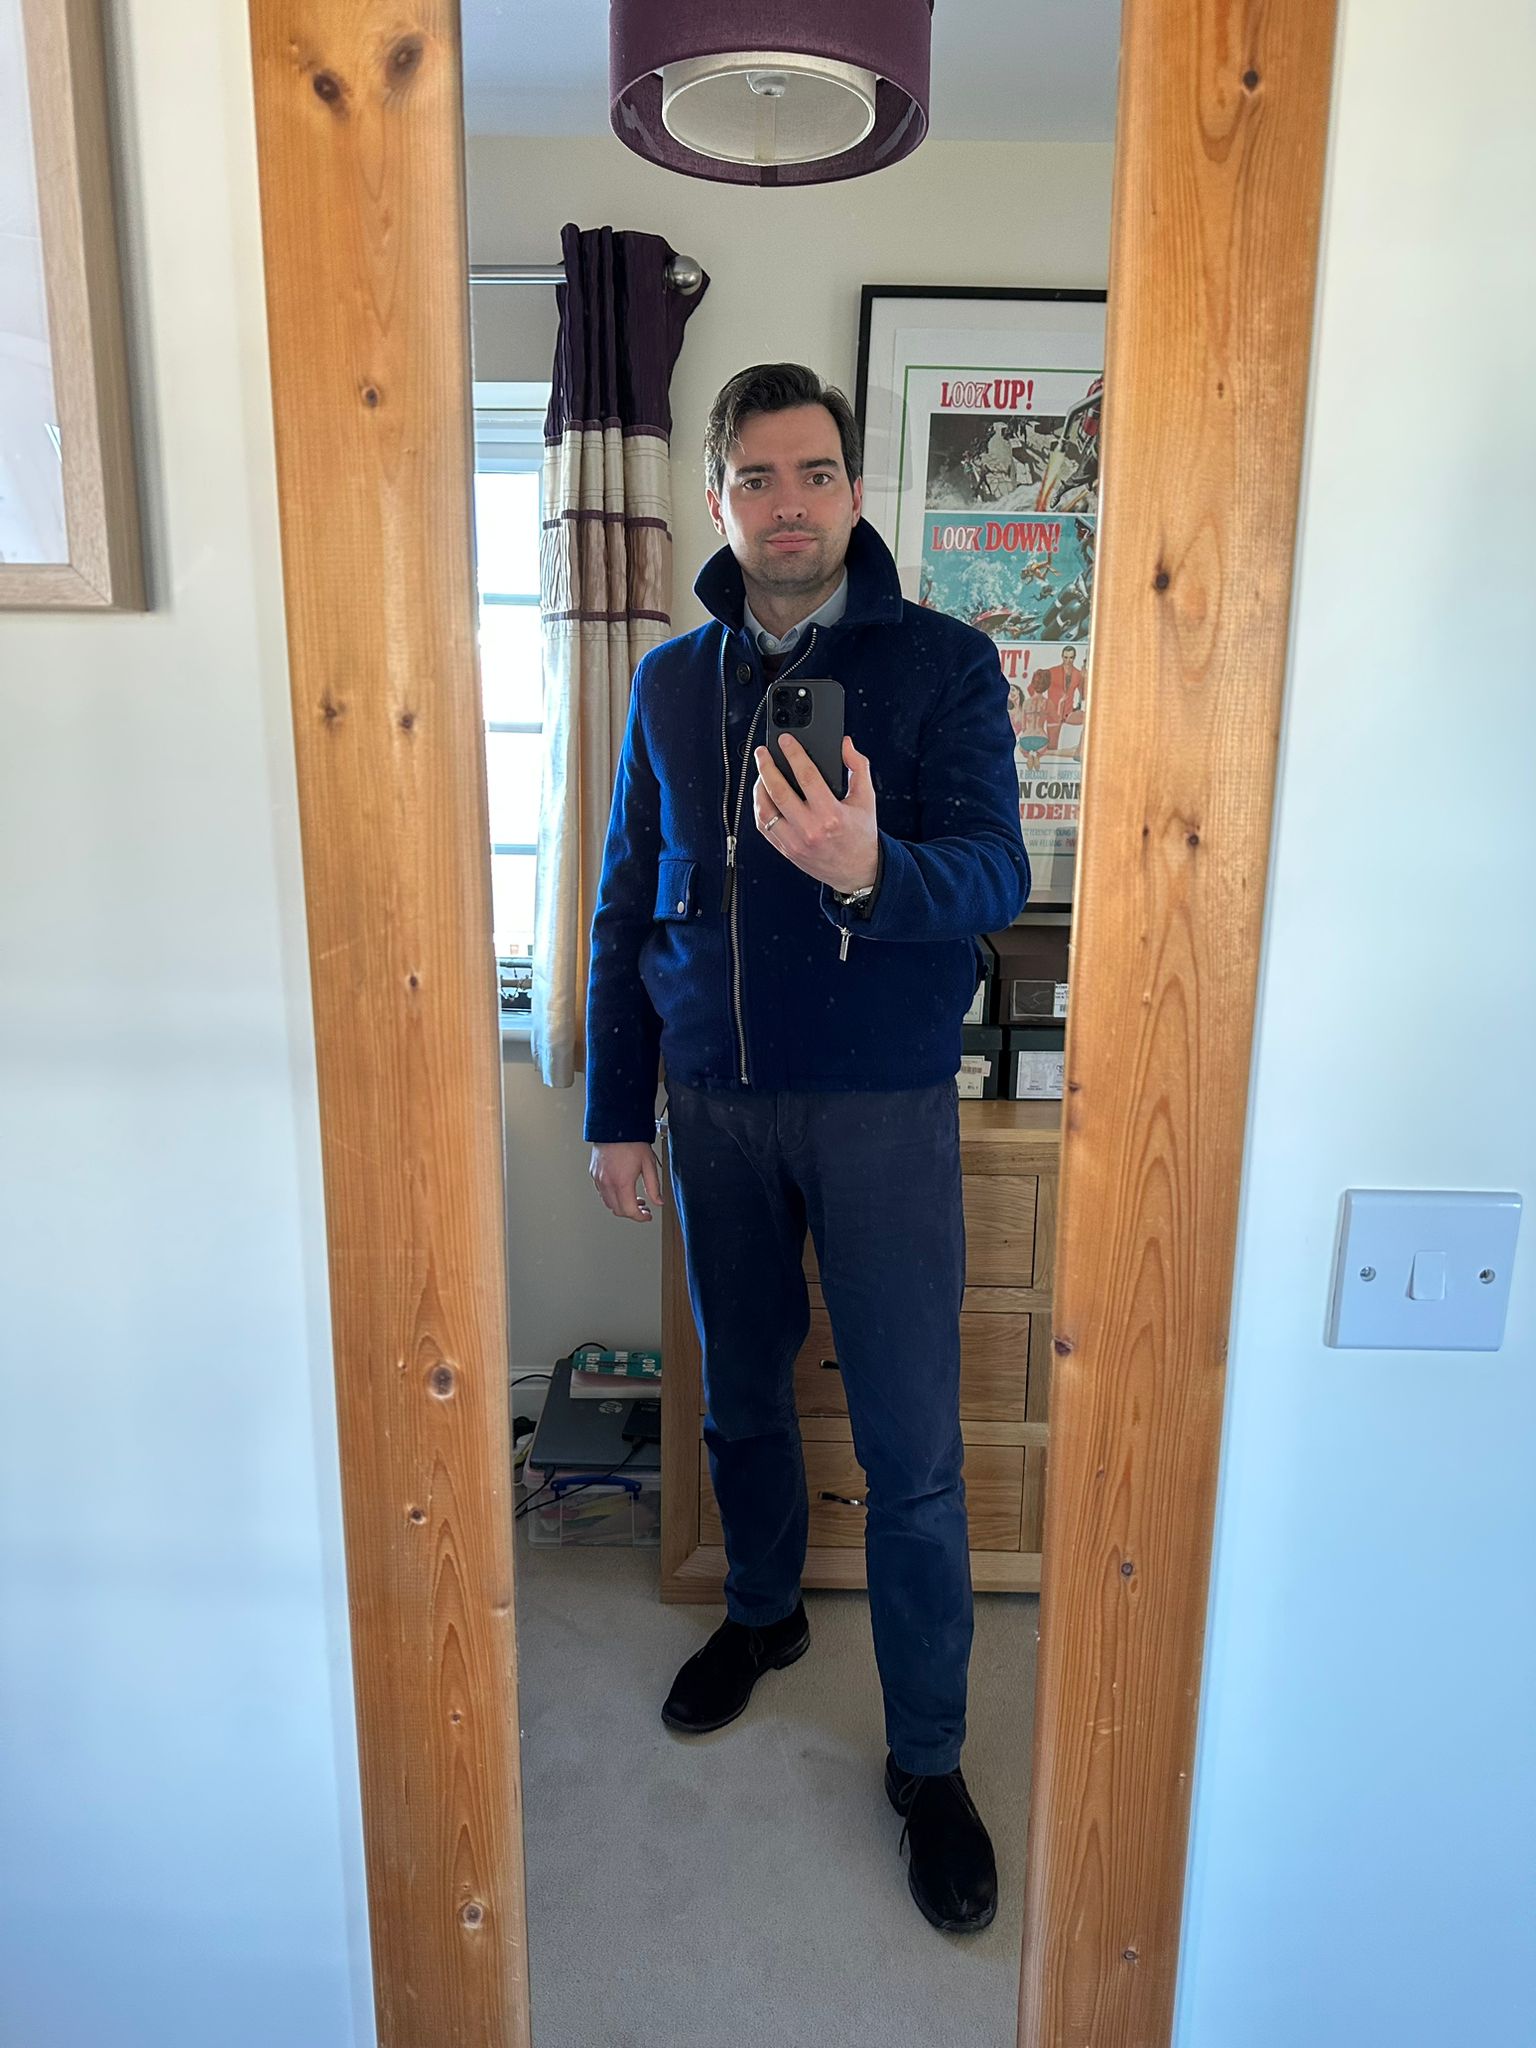 Jacket from Spectre selfie